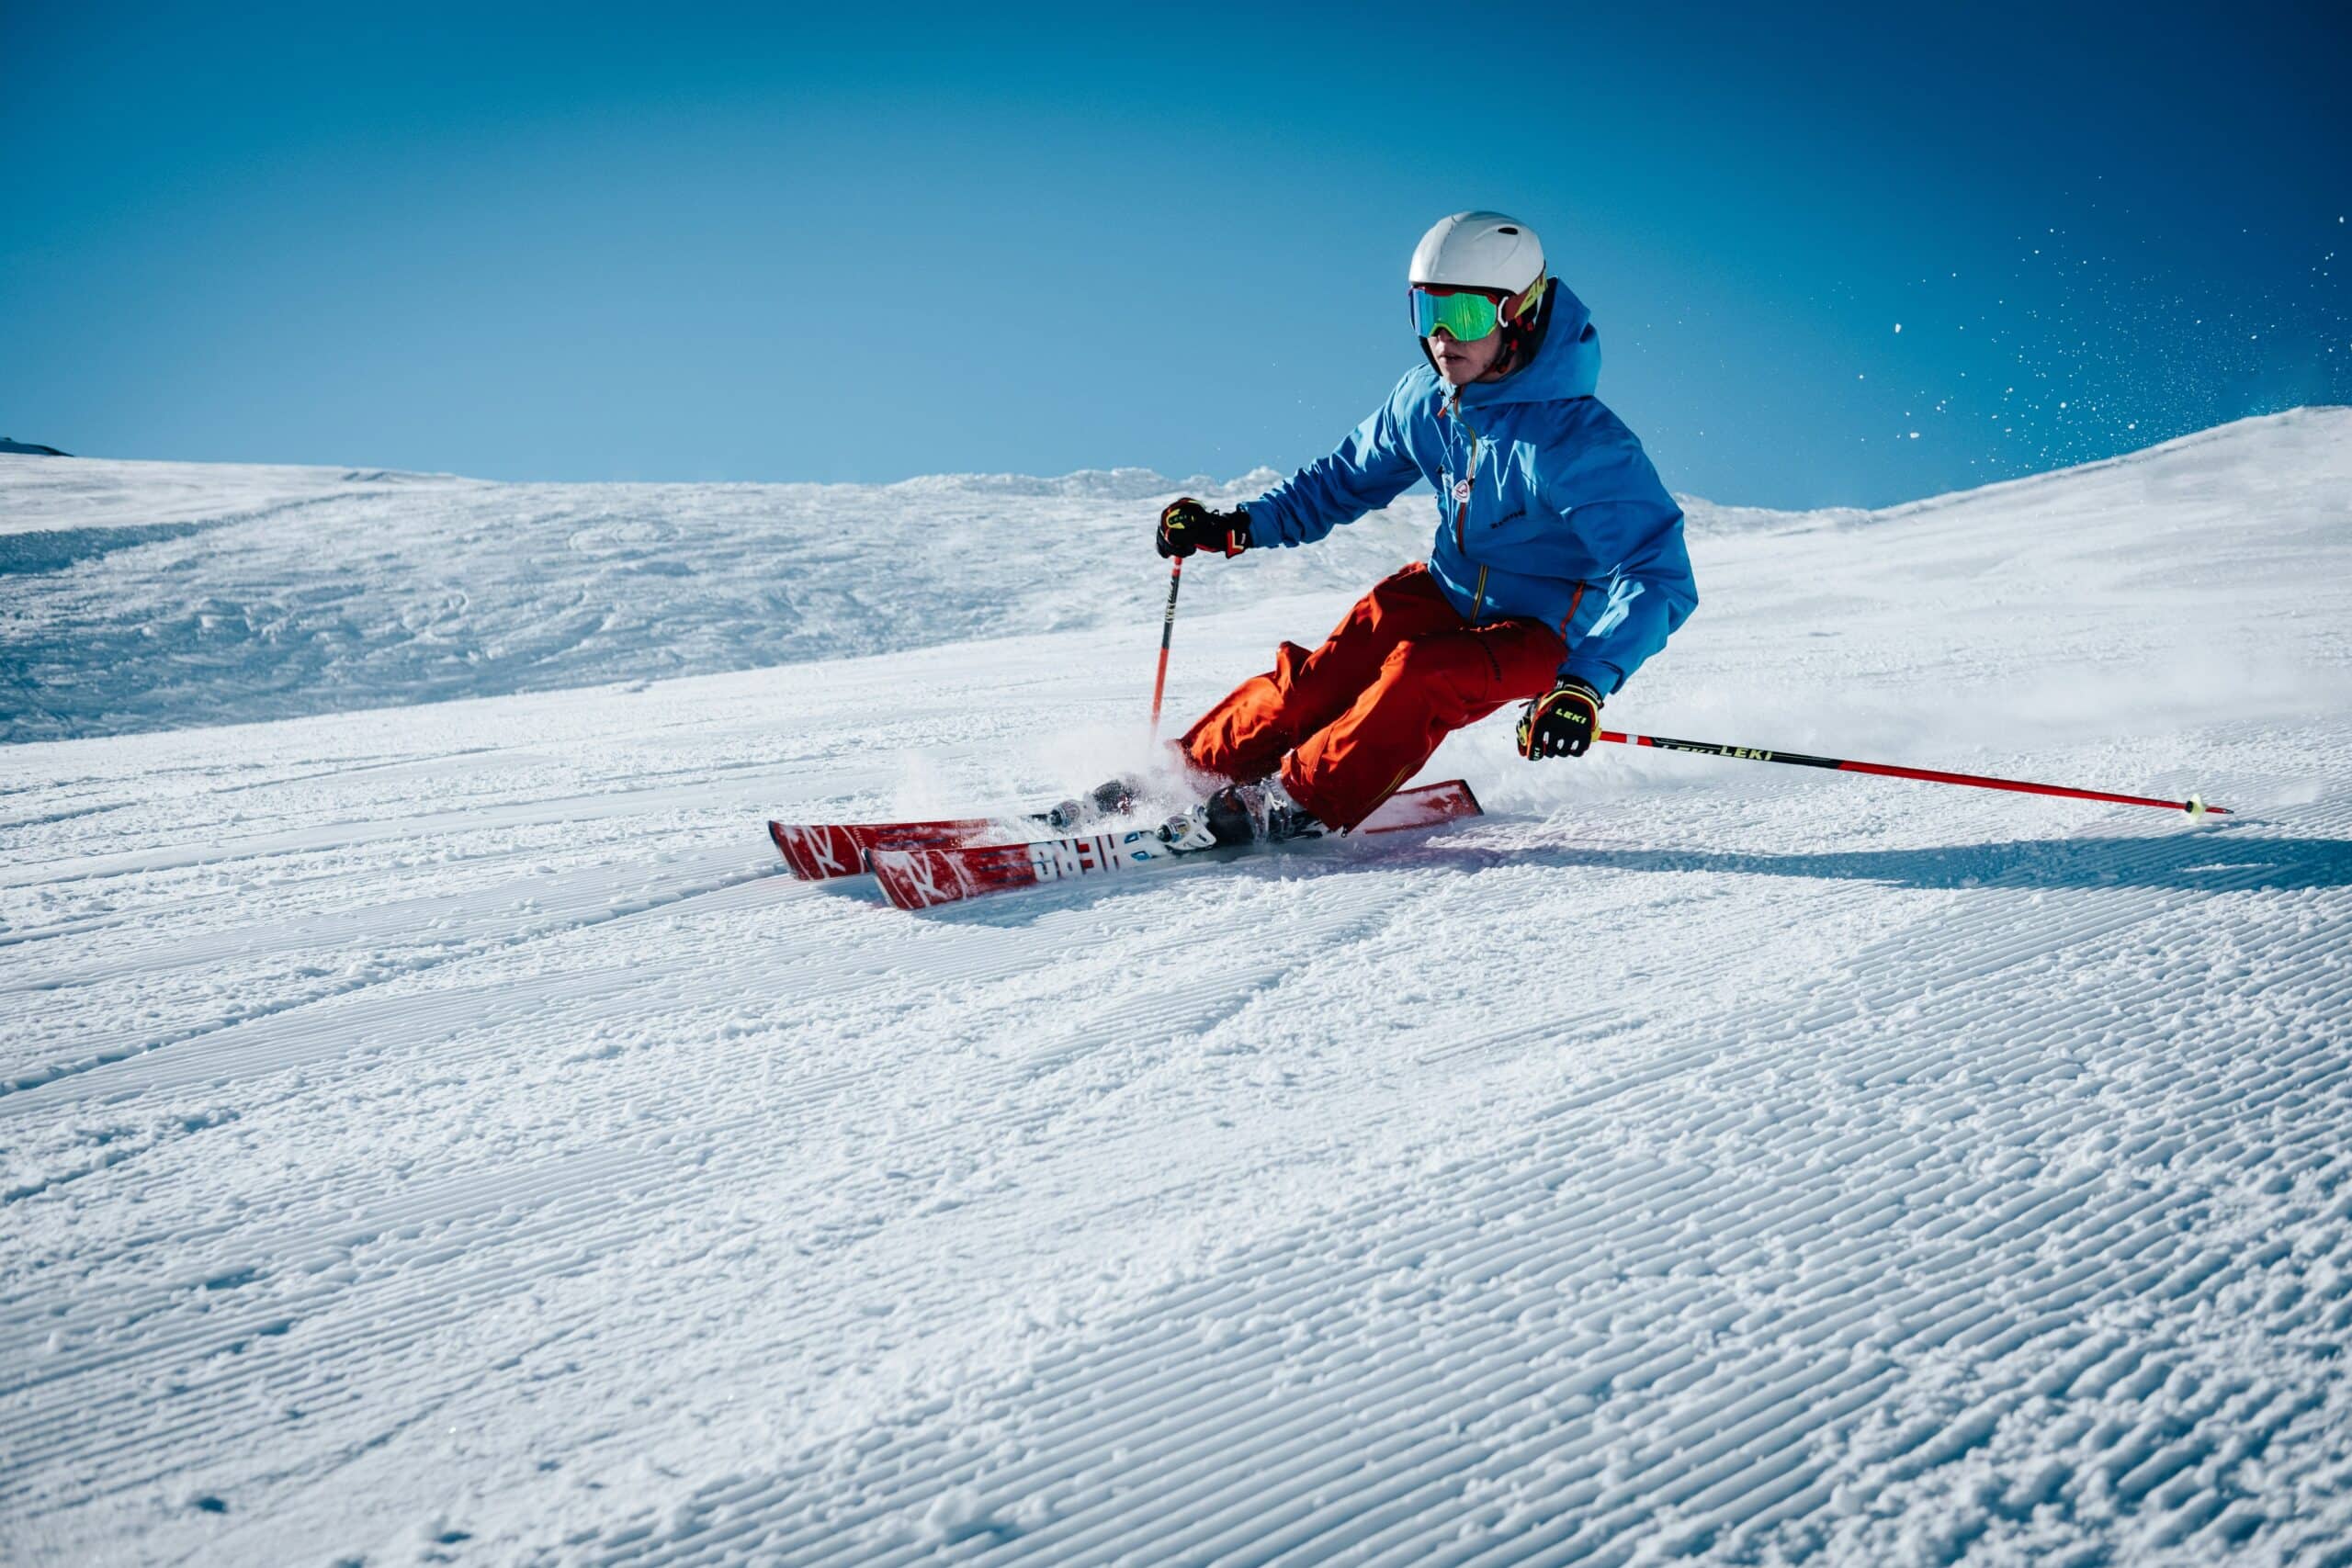 La sélection Trazler des 10 meilleurs spots de ski en décembre